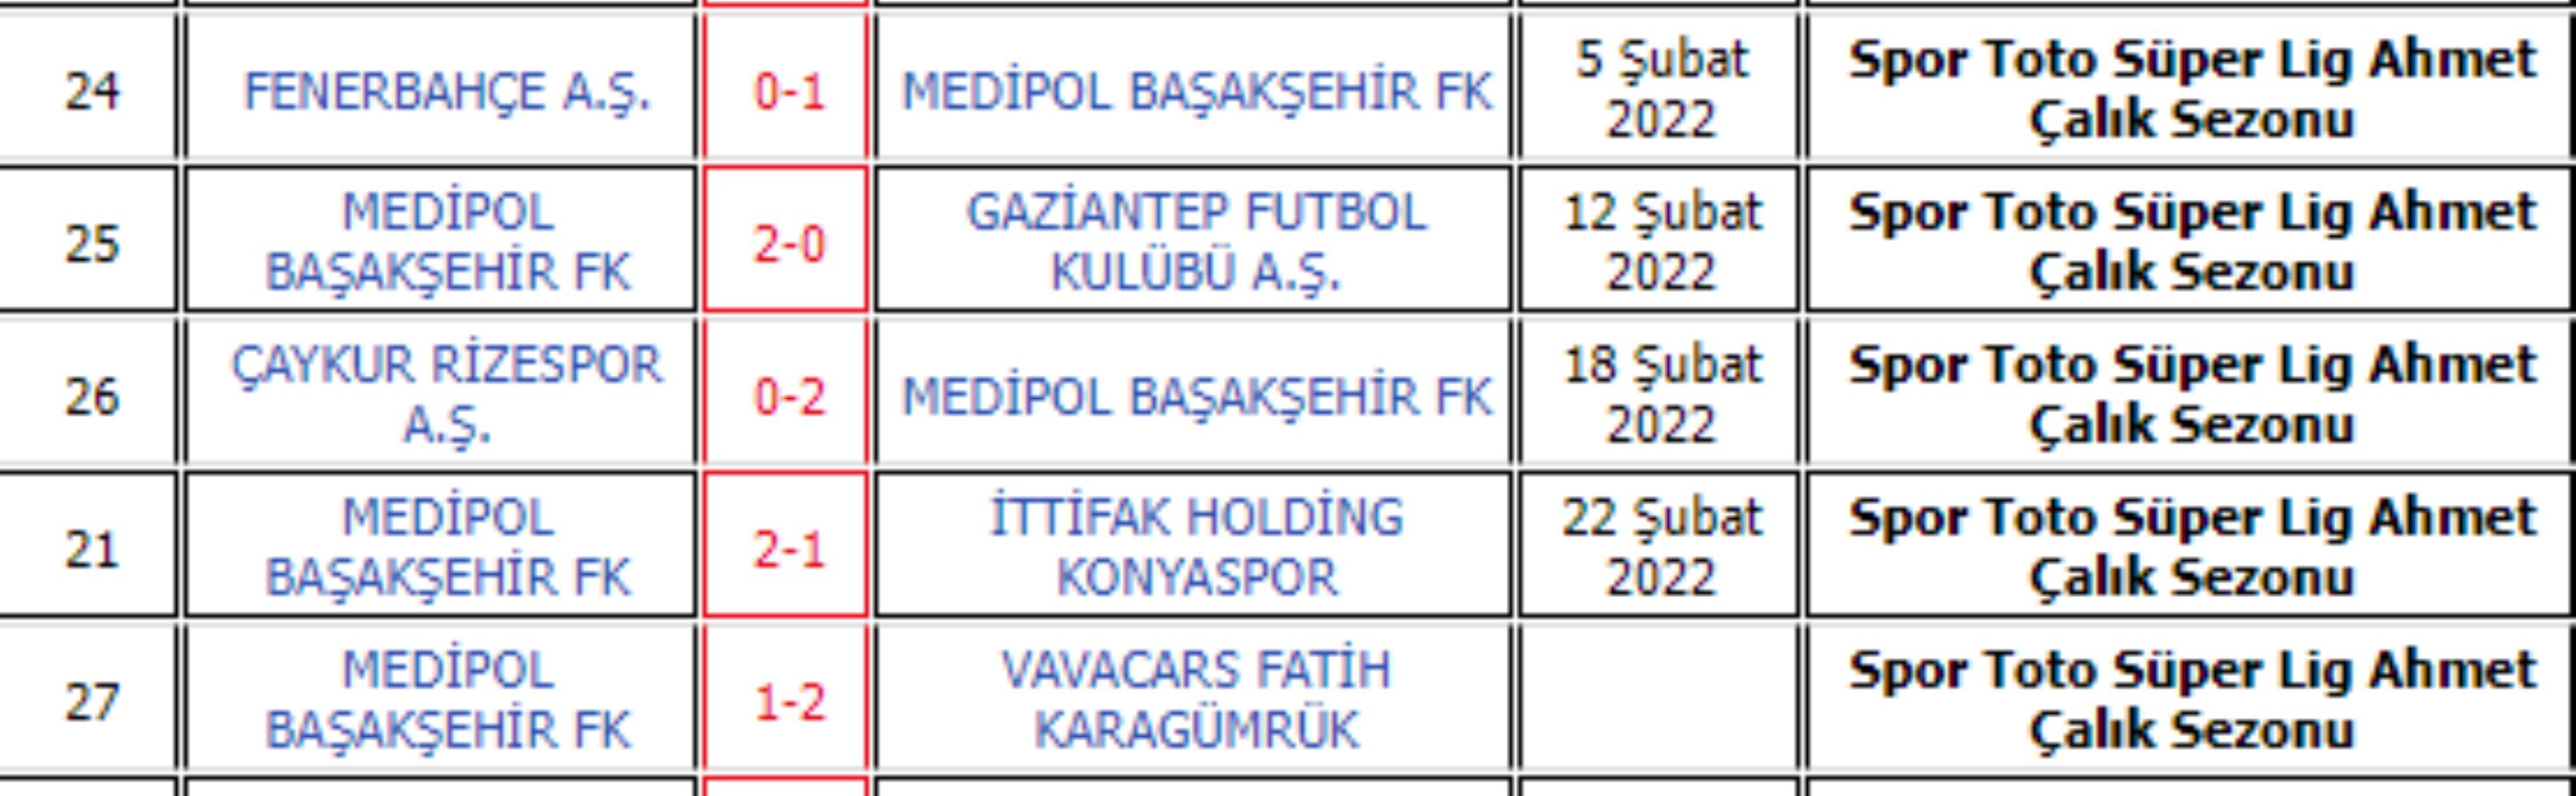 Fatih Karagümrük, Medipol Başakşehir'in 4 maçlık yenilmezlik serisini bitirdi: 2-1